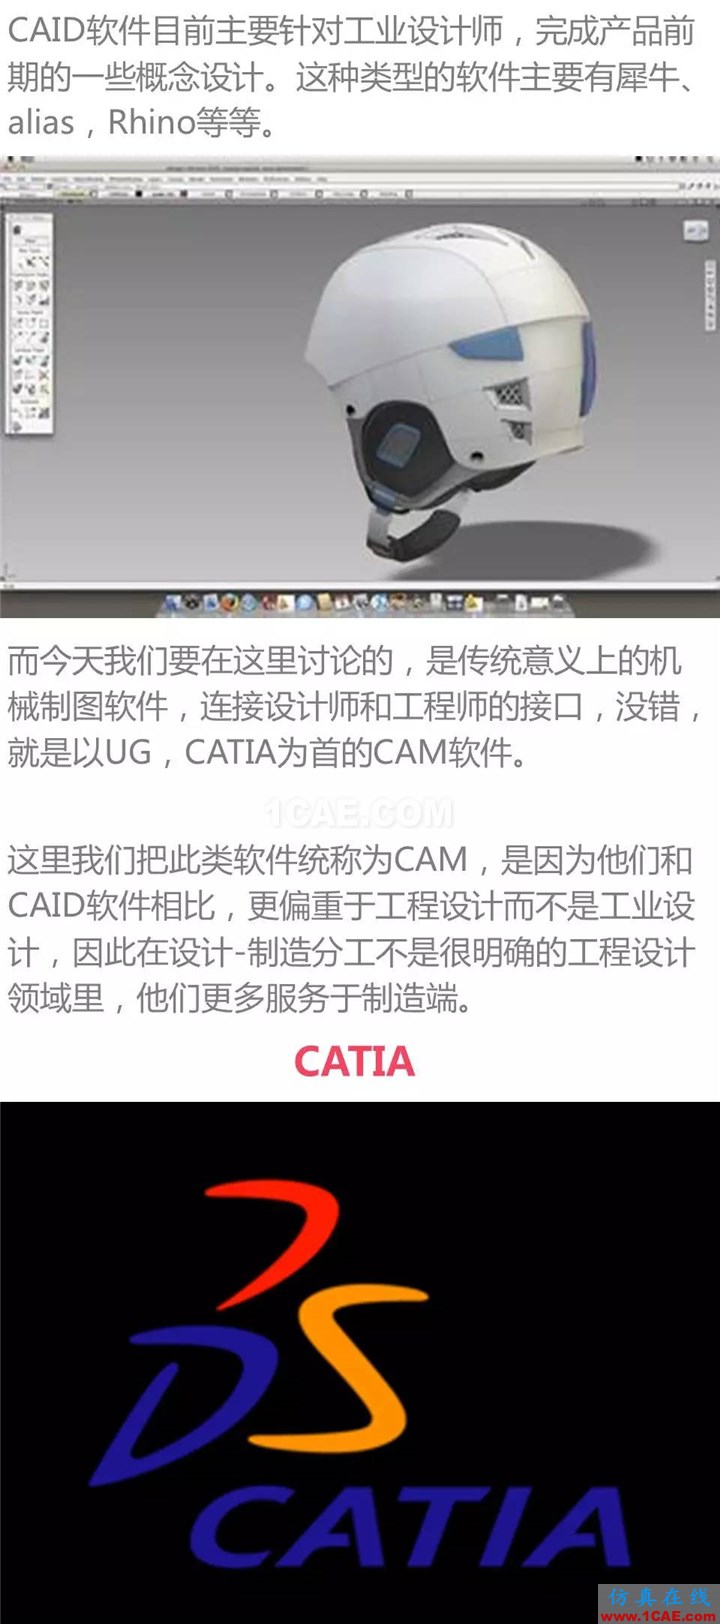 用CATIA还是UG，这是个问题Catia应用技术图片2